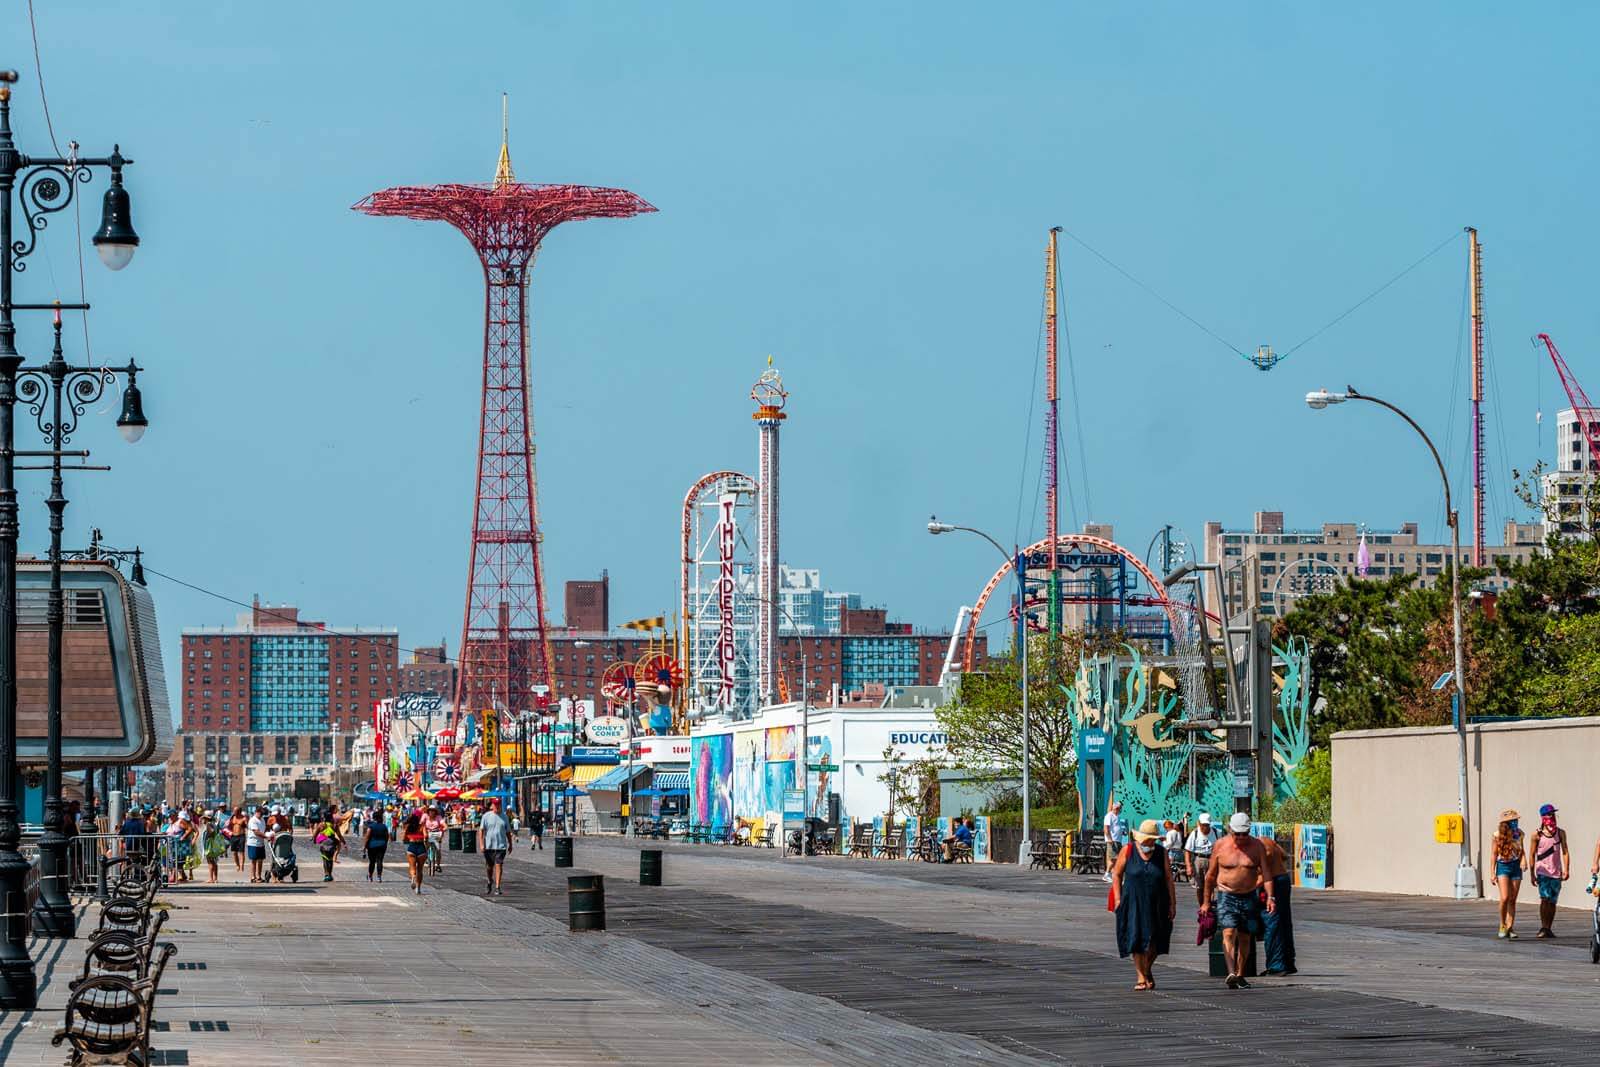 Coney Island Boardwalk in Brooklyn